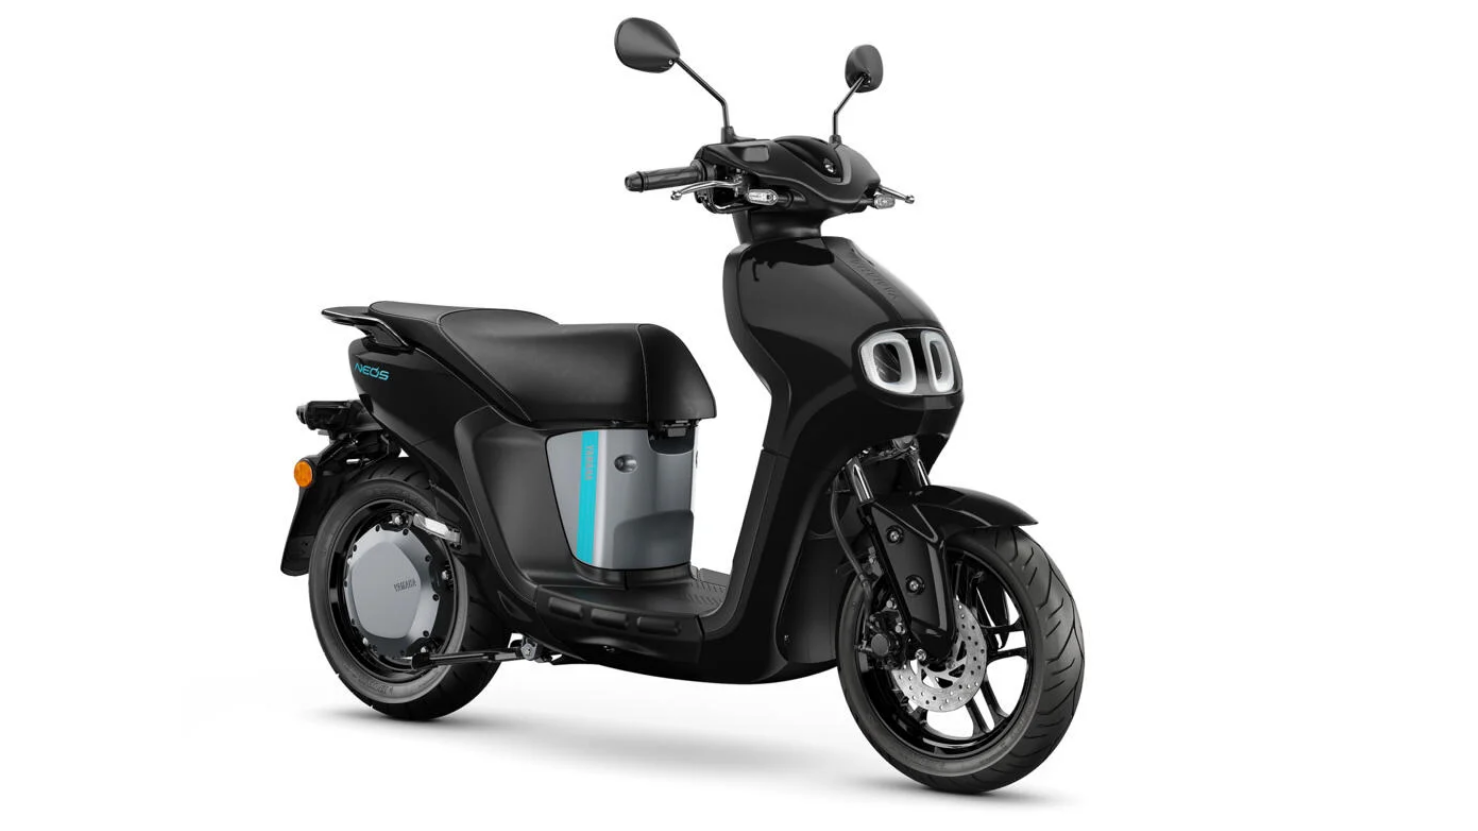 Bộ đôi xe tay ga Yamaha ra mắt thị trường Việt giá từ 282 triệu đồng